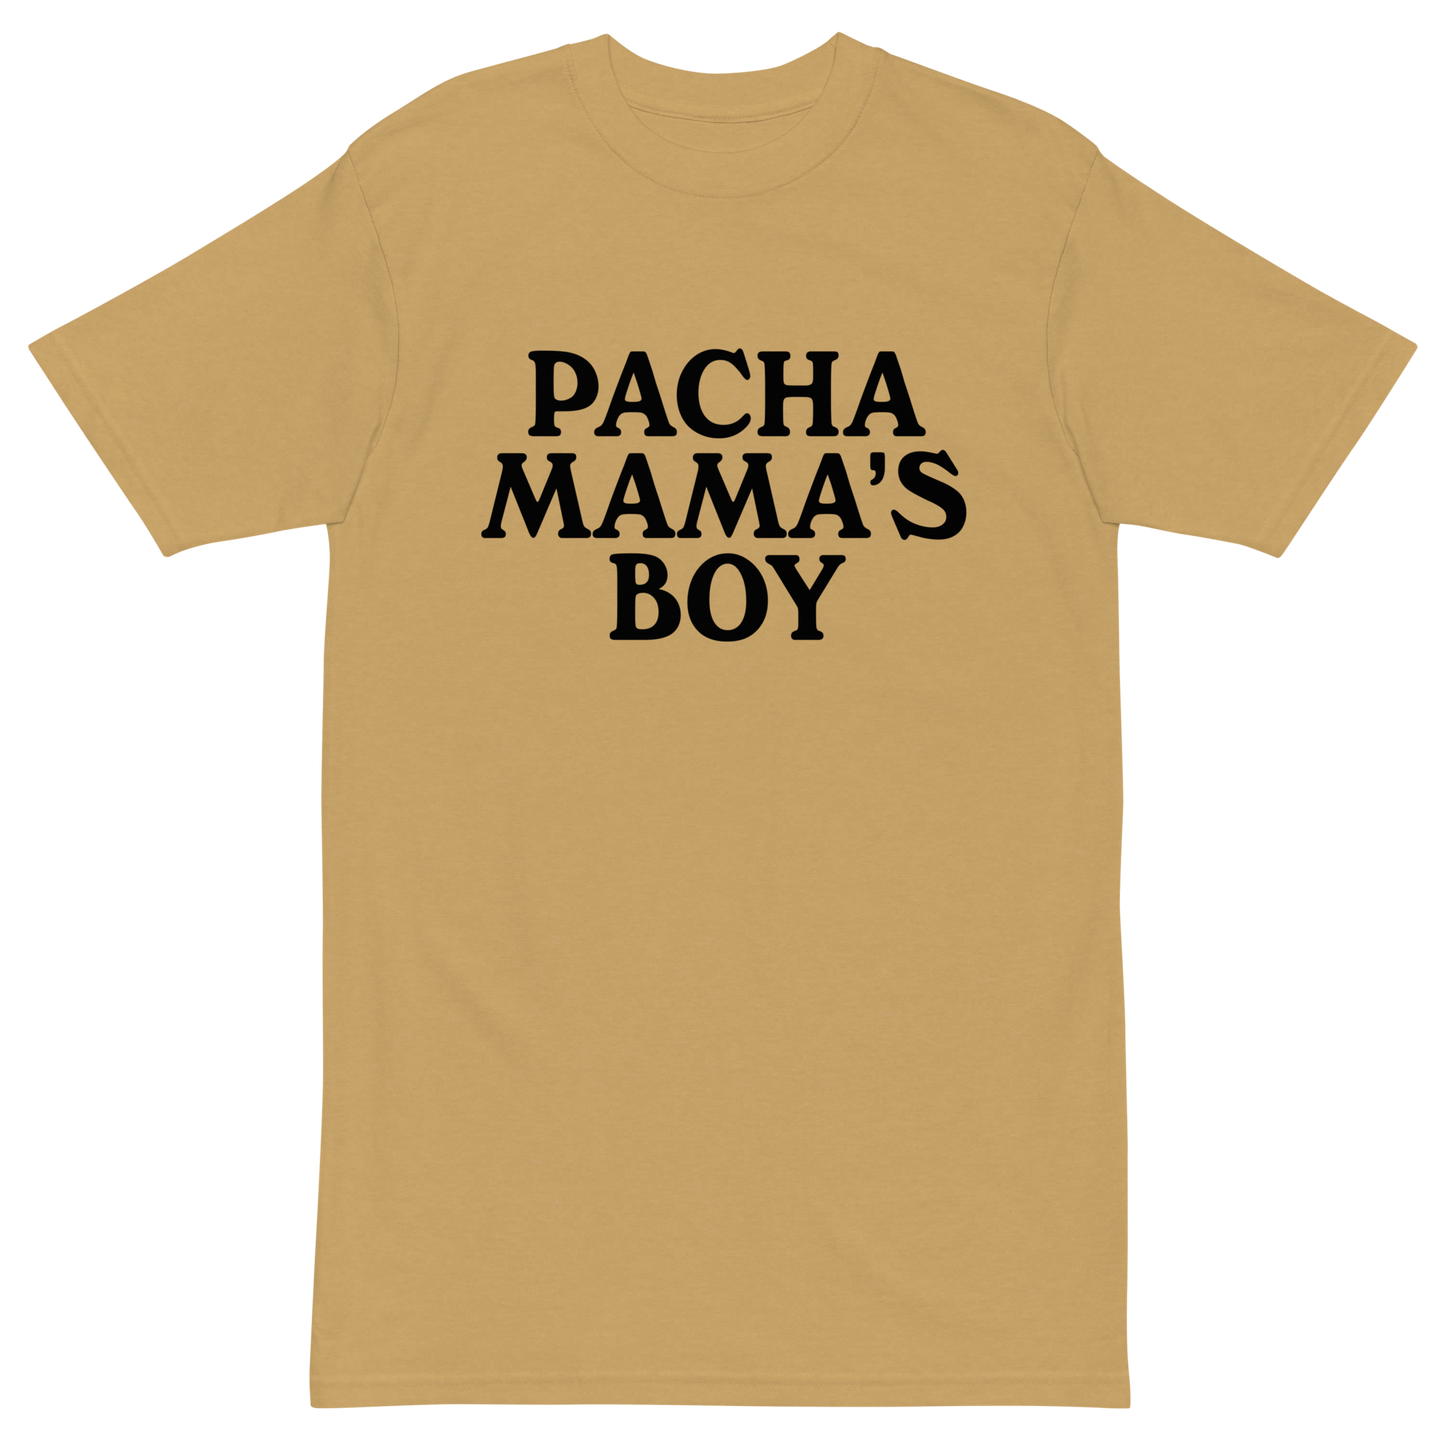 Pachamama's Boy Premium Graphic Tee